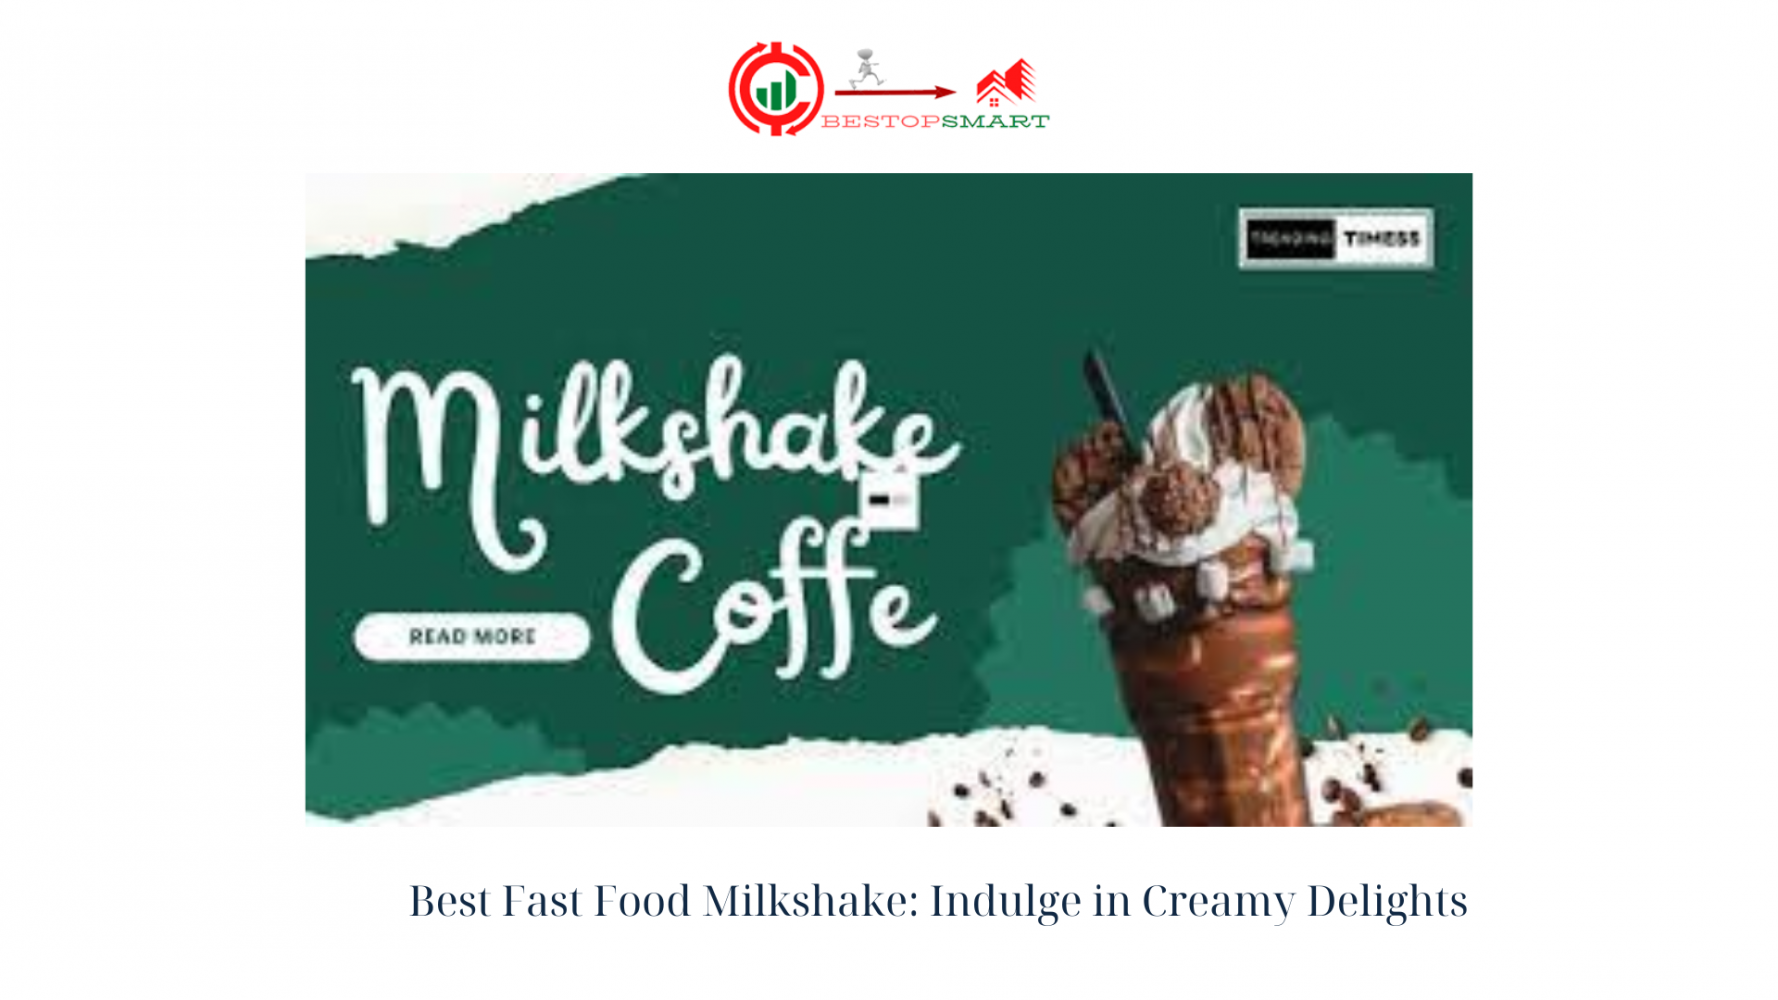 Best Fast Food Milkshake: Indulge in Creamy Delights